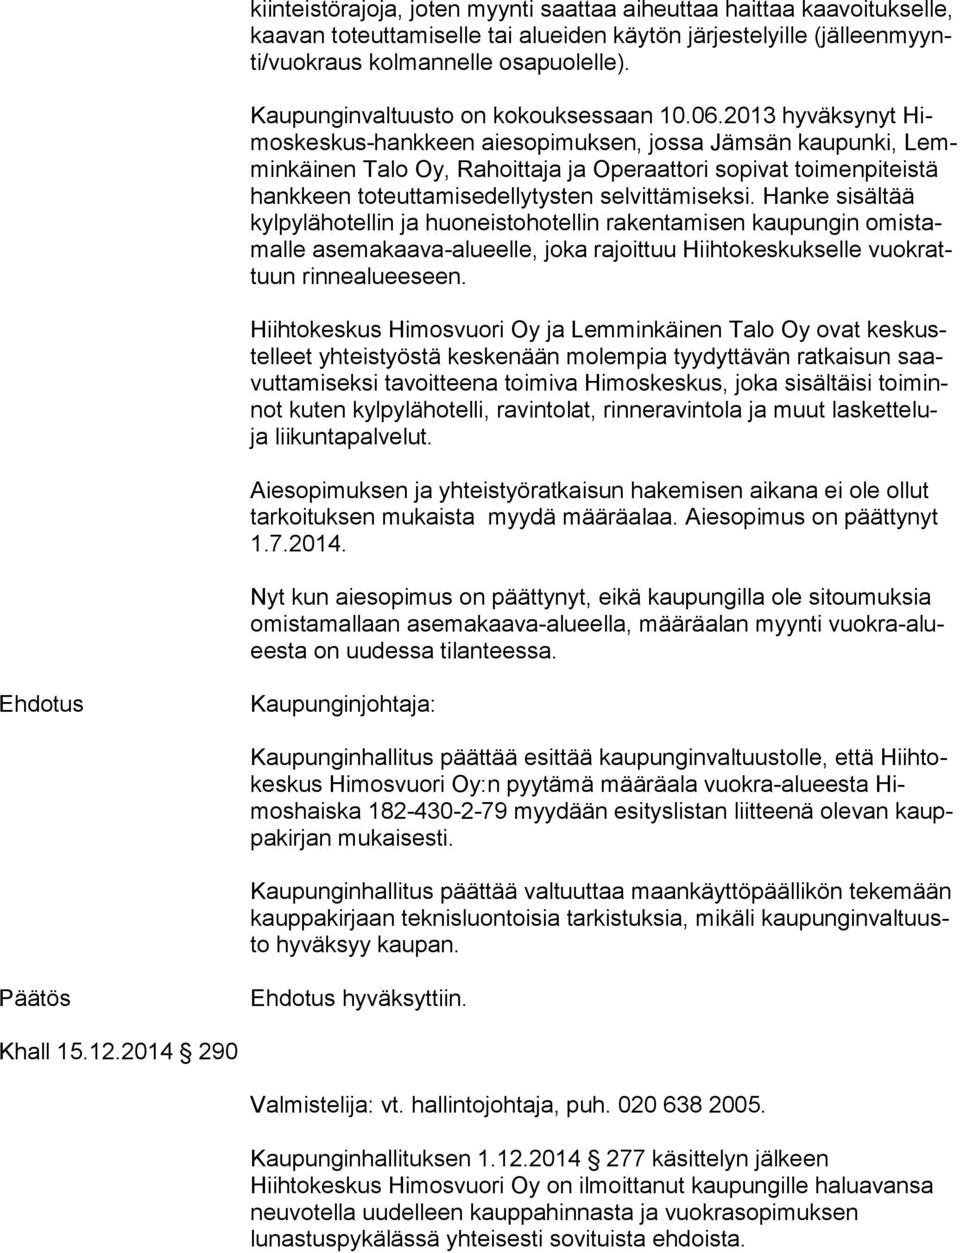 2013 hyväksynyt Himos kes kus-hank keen aiesopimuksen, jossa Jämsän kaupunki, Lemmin käi nen Talo Oy, Rahoittaja ja Operaattori sopivat toi men pi teis tä hankkeen toteuttamisedellytysten